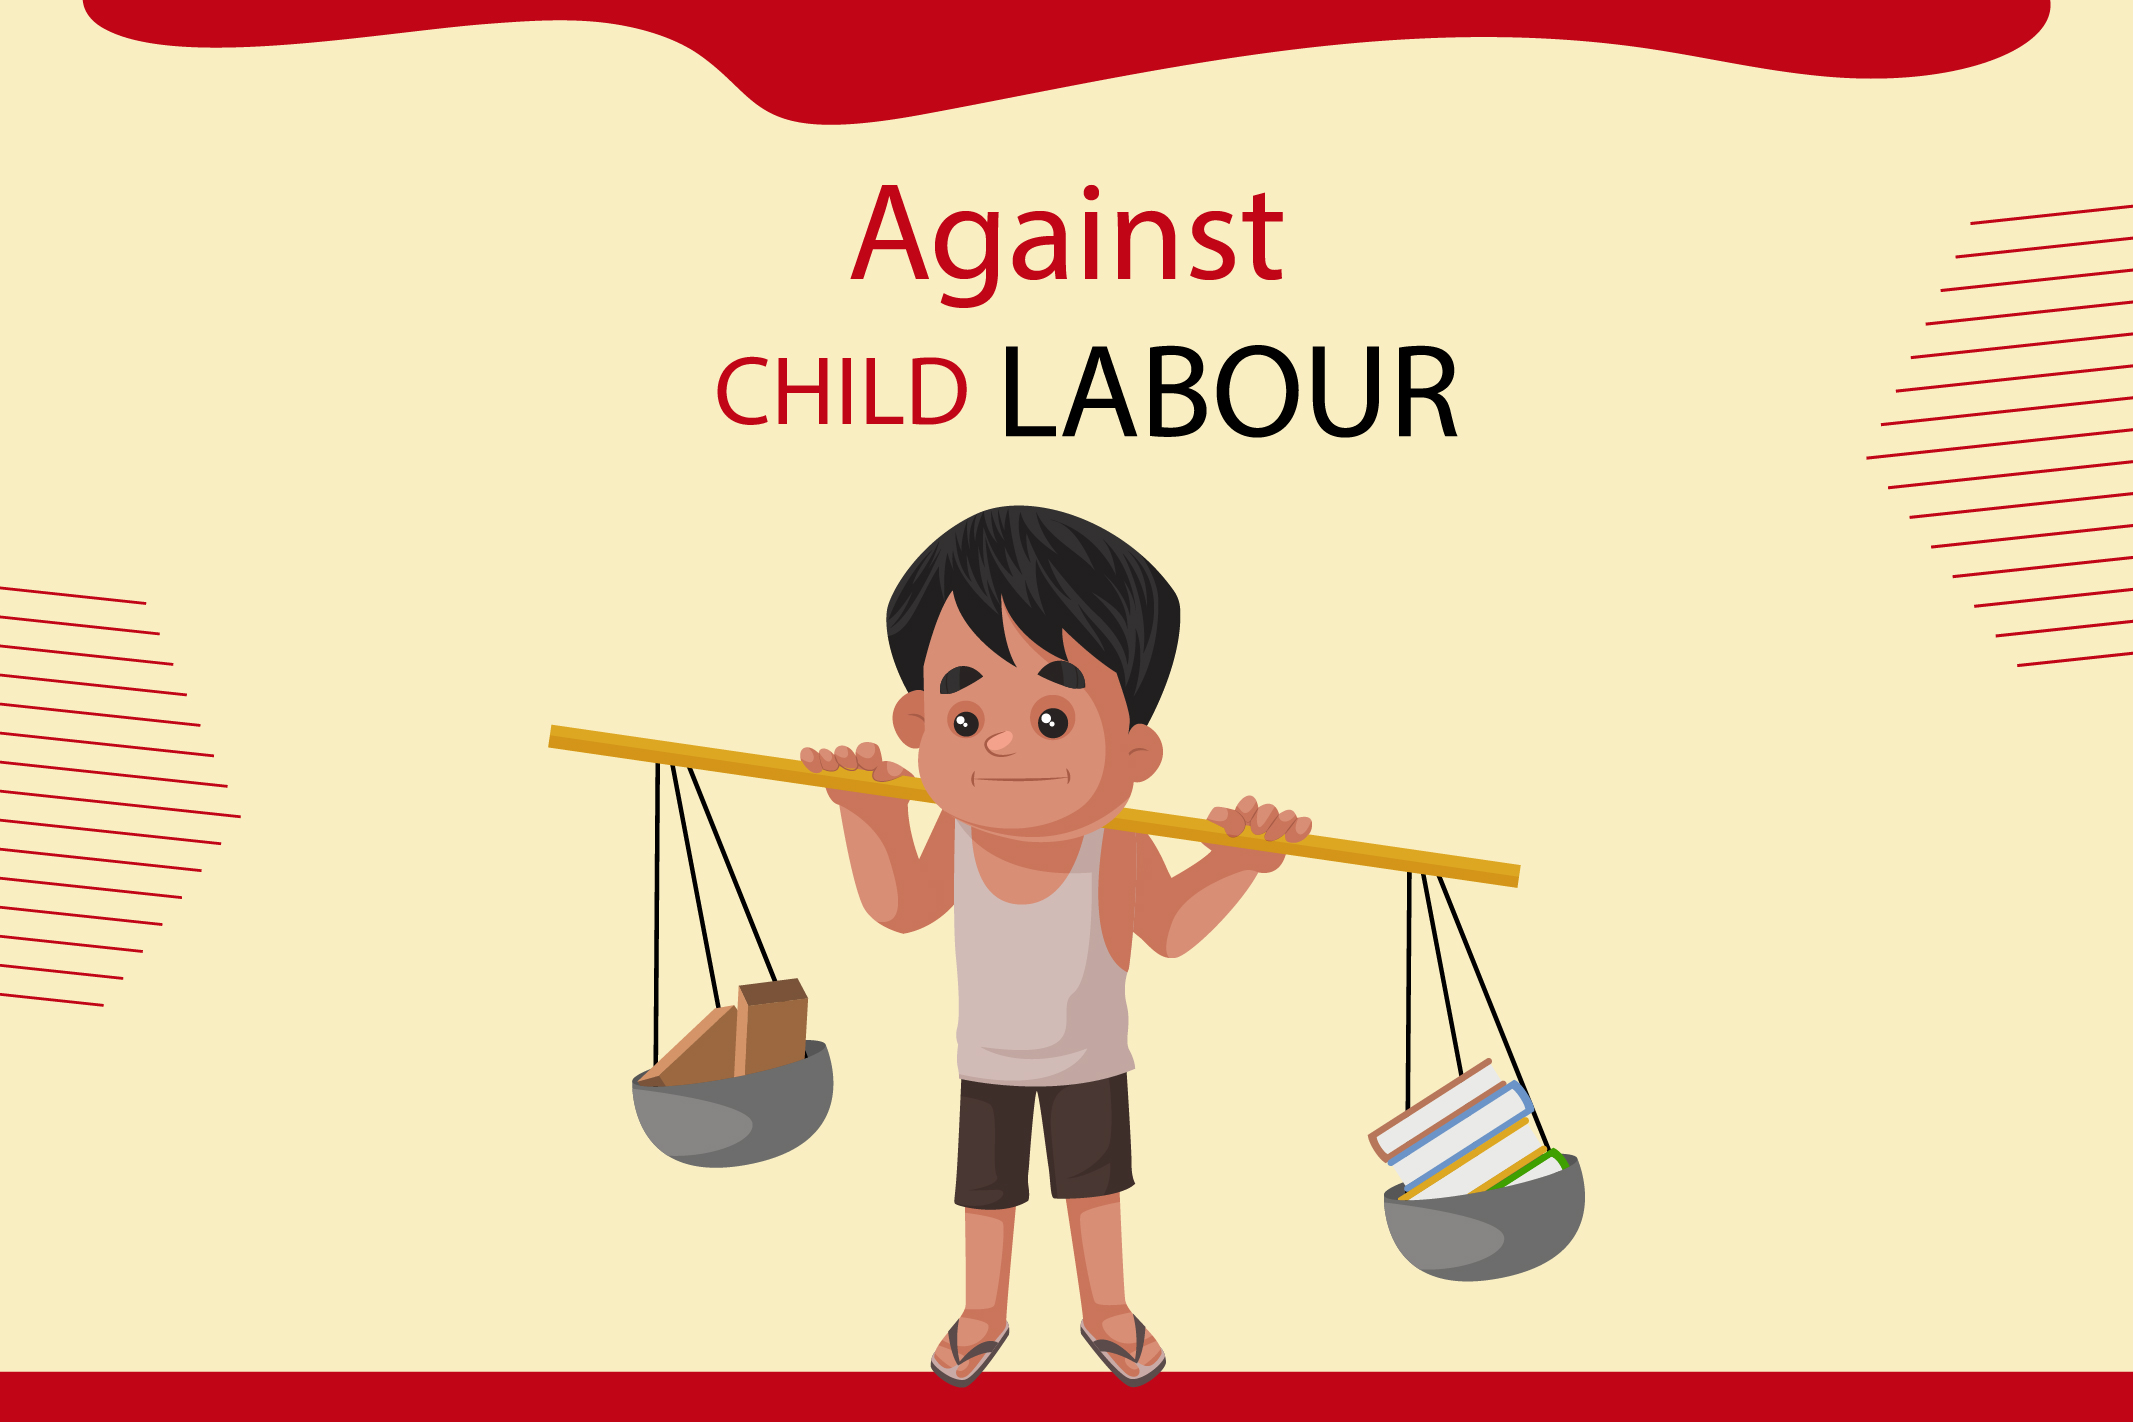 Combate ao Trabalho Infantil – a luta deve seguir!